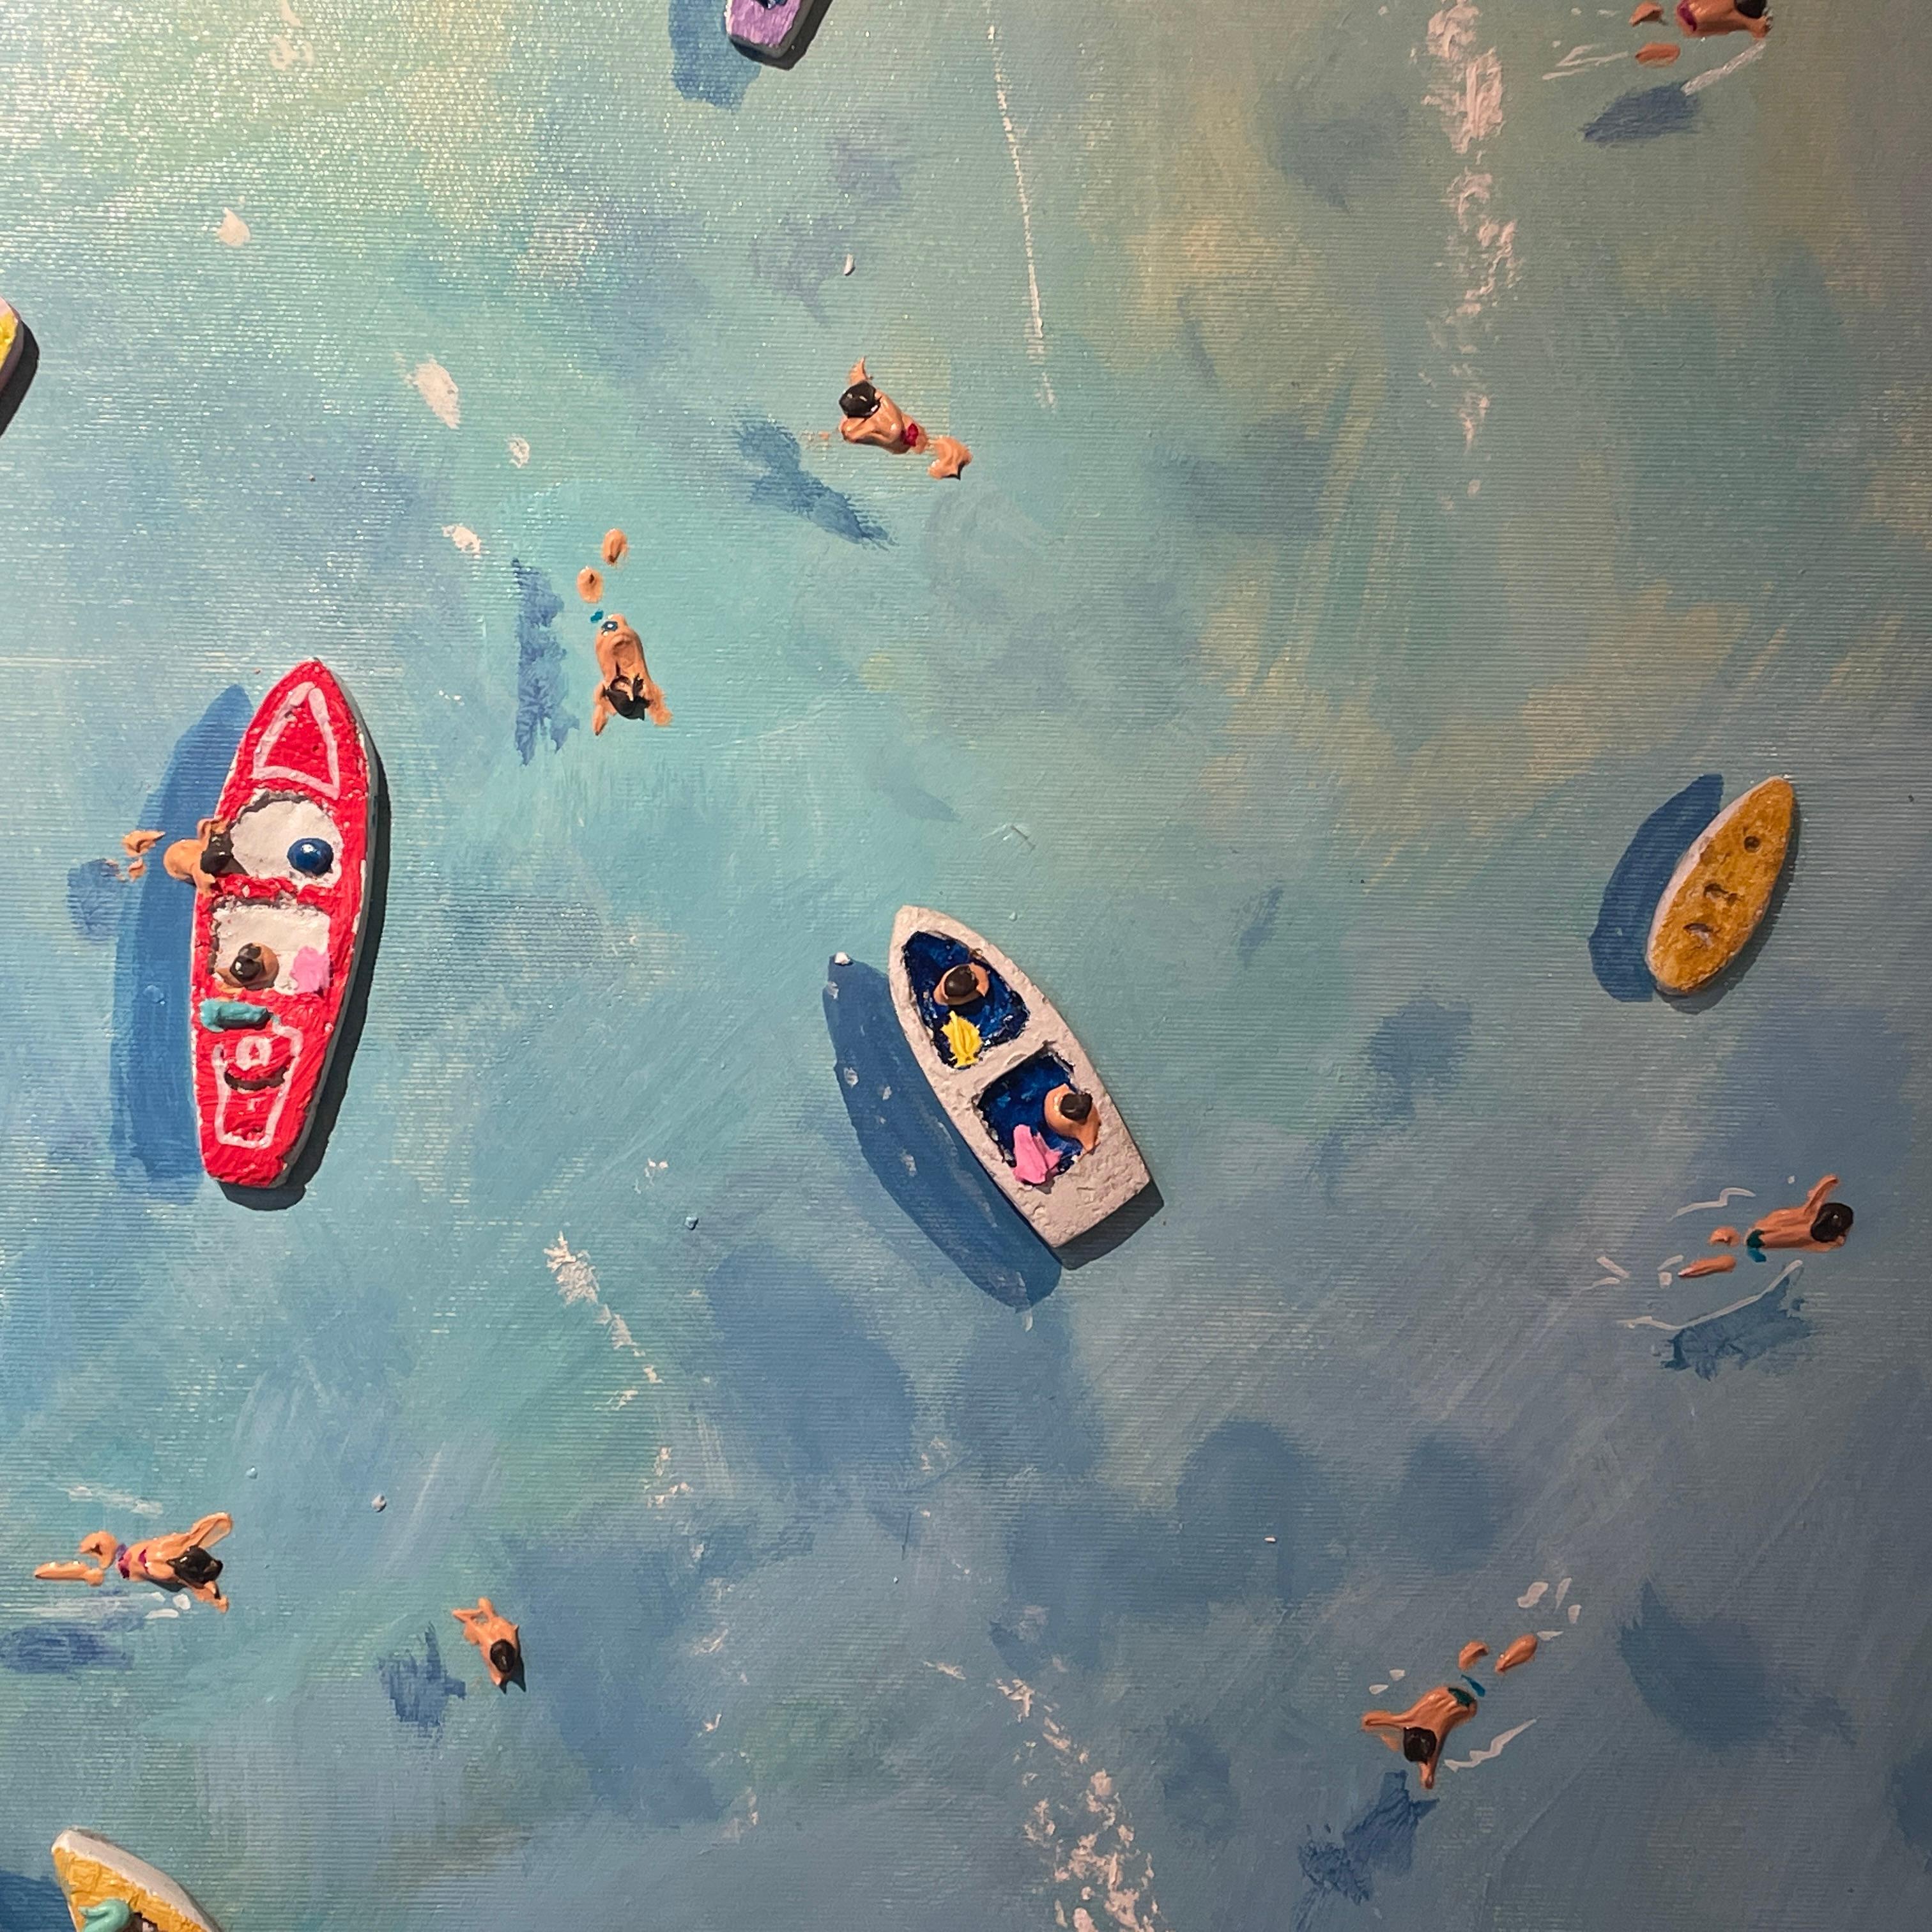 Peinture contemporaine colorée en 3D « Big Blue » représentant la mer, les bateaux et les personnages - Contemporain Painting par Max Todd